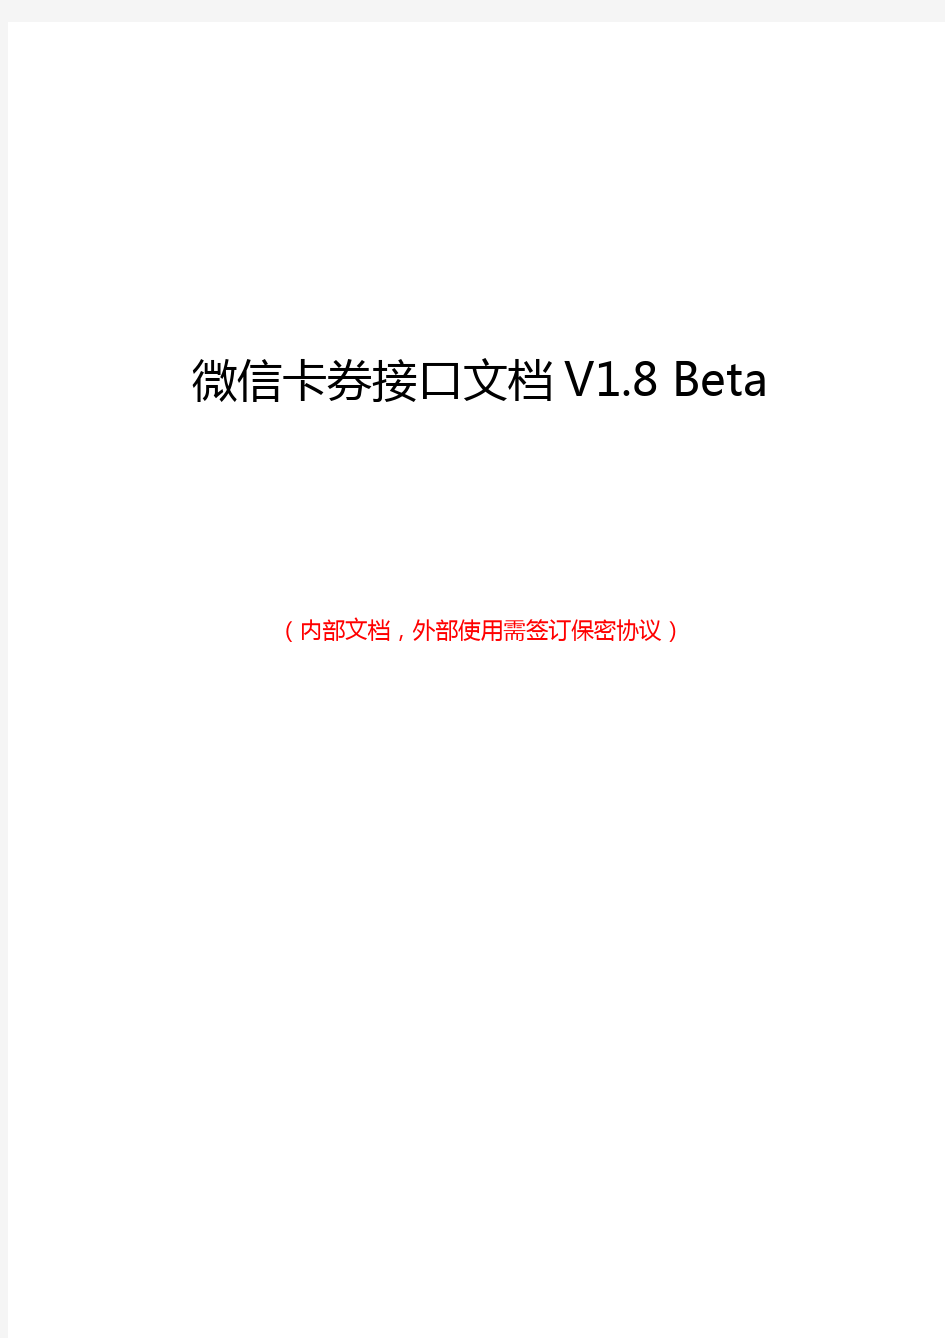 微信卡券接口文档V1.8 Beta